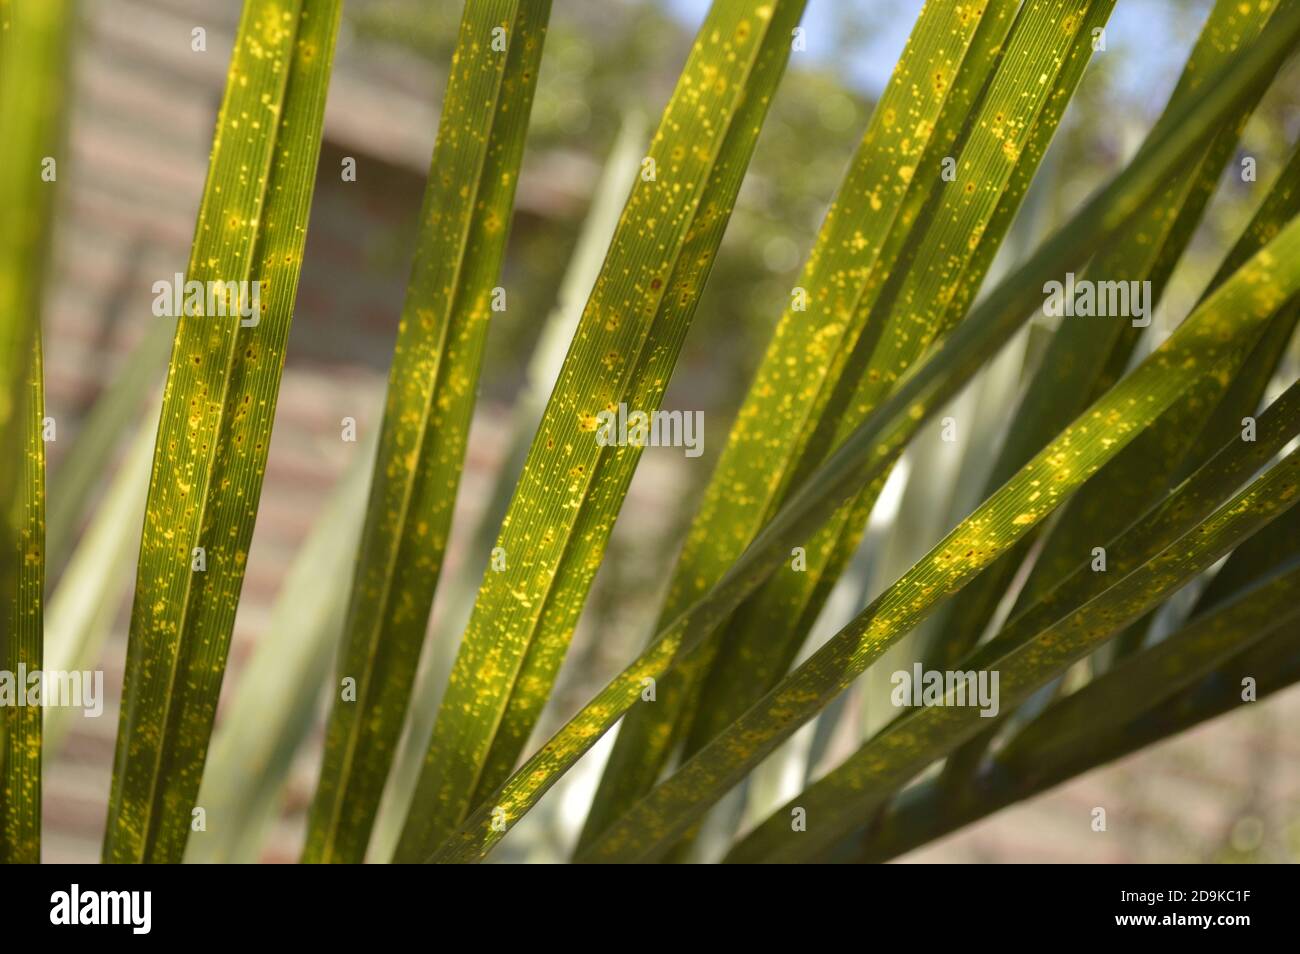 Adaxiale Ansicht von dünnen grünen Palmenblättern mit gelben Flecken Stockfoto